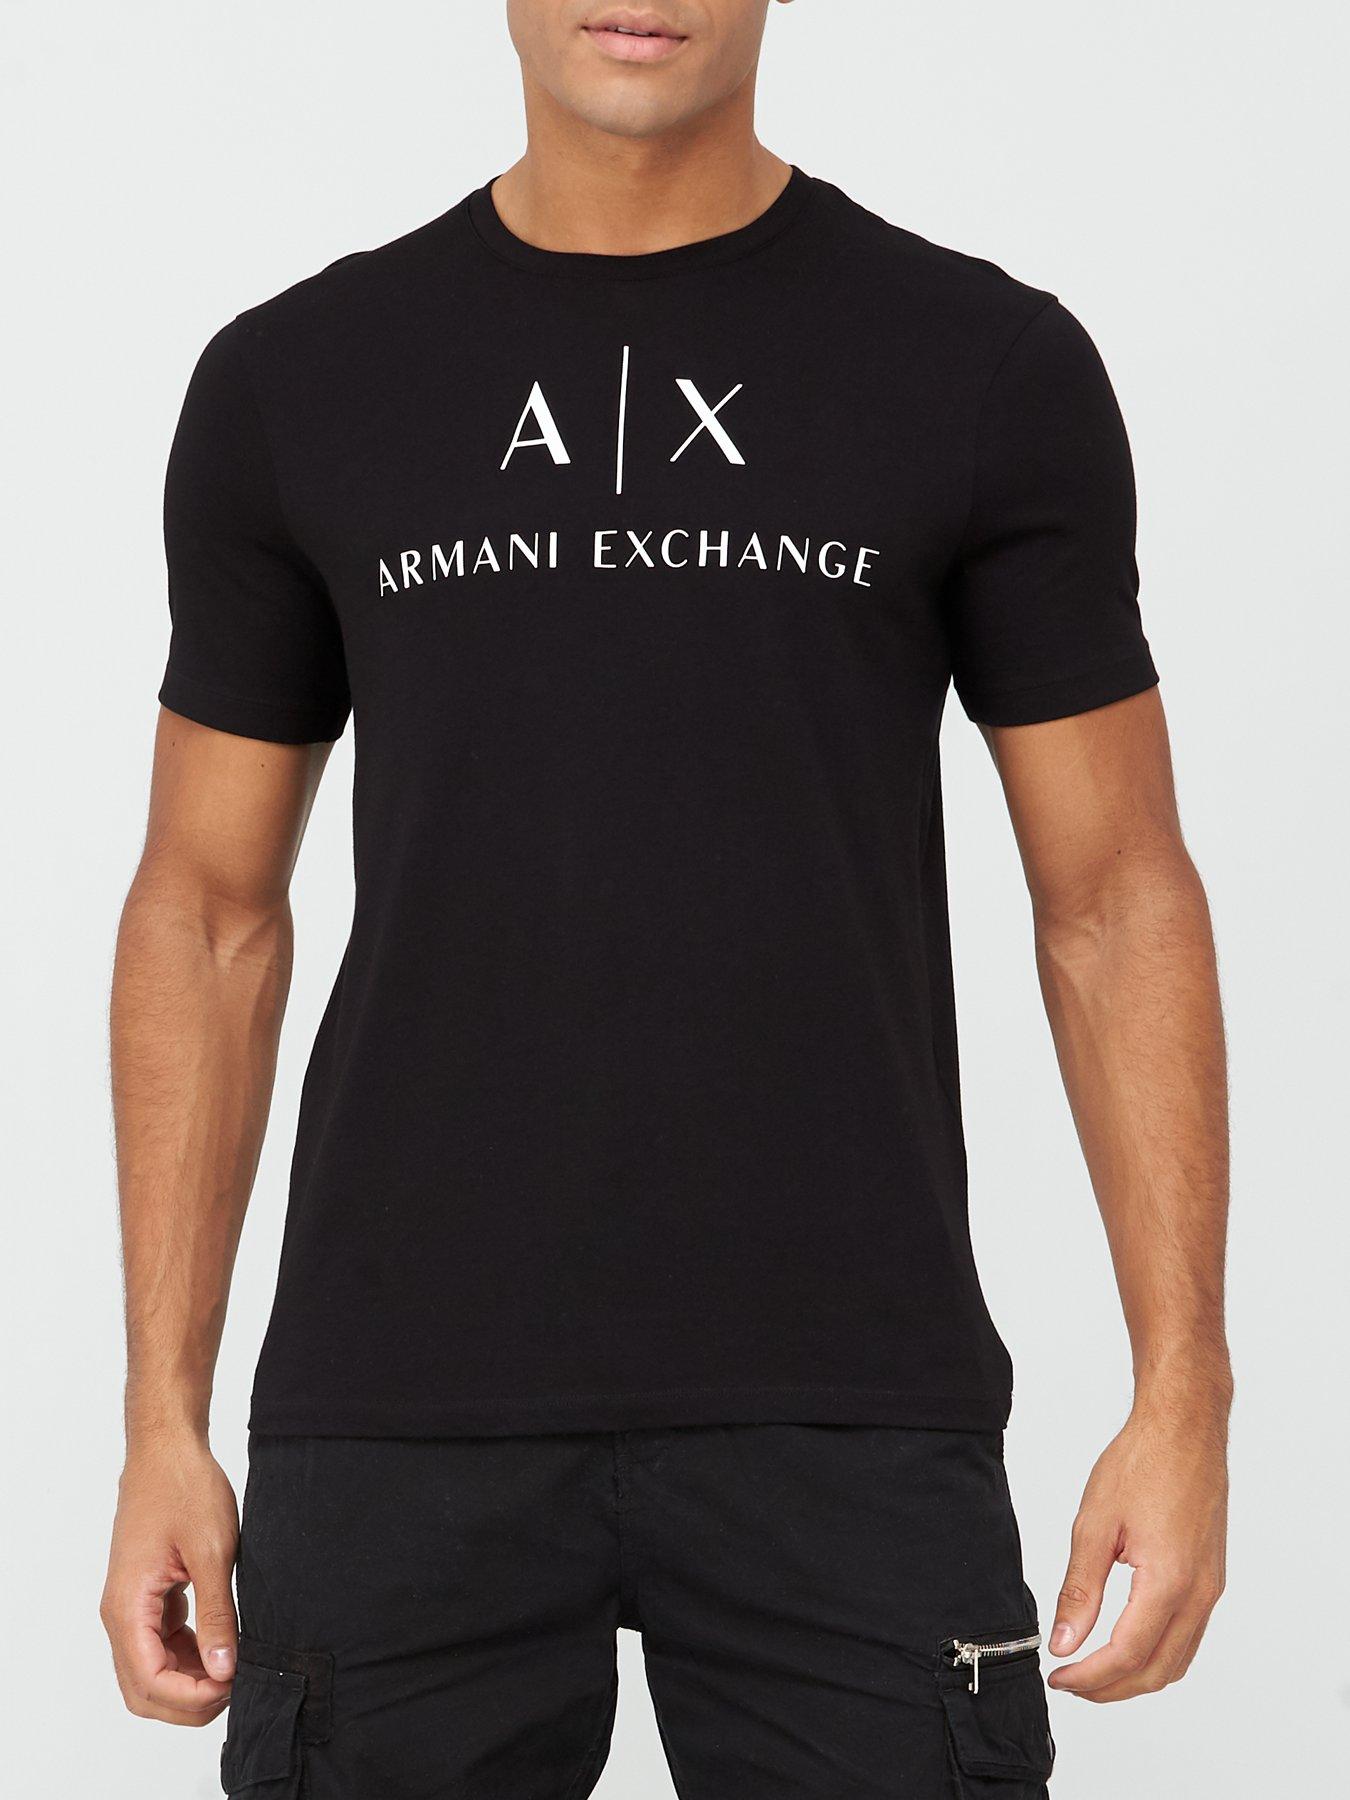 cheap armani exchange t shirts